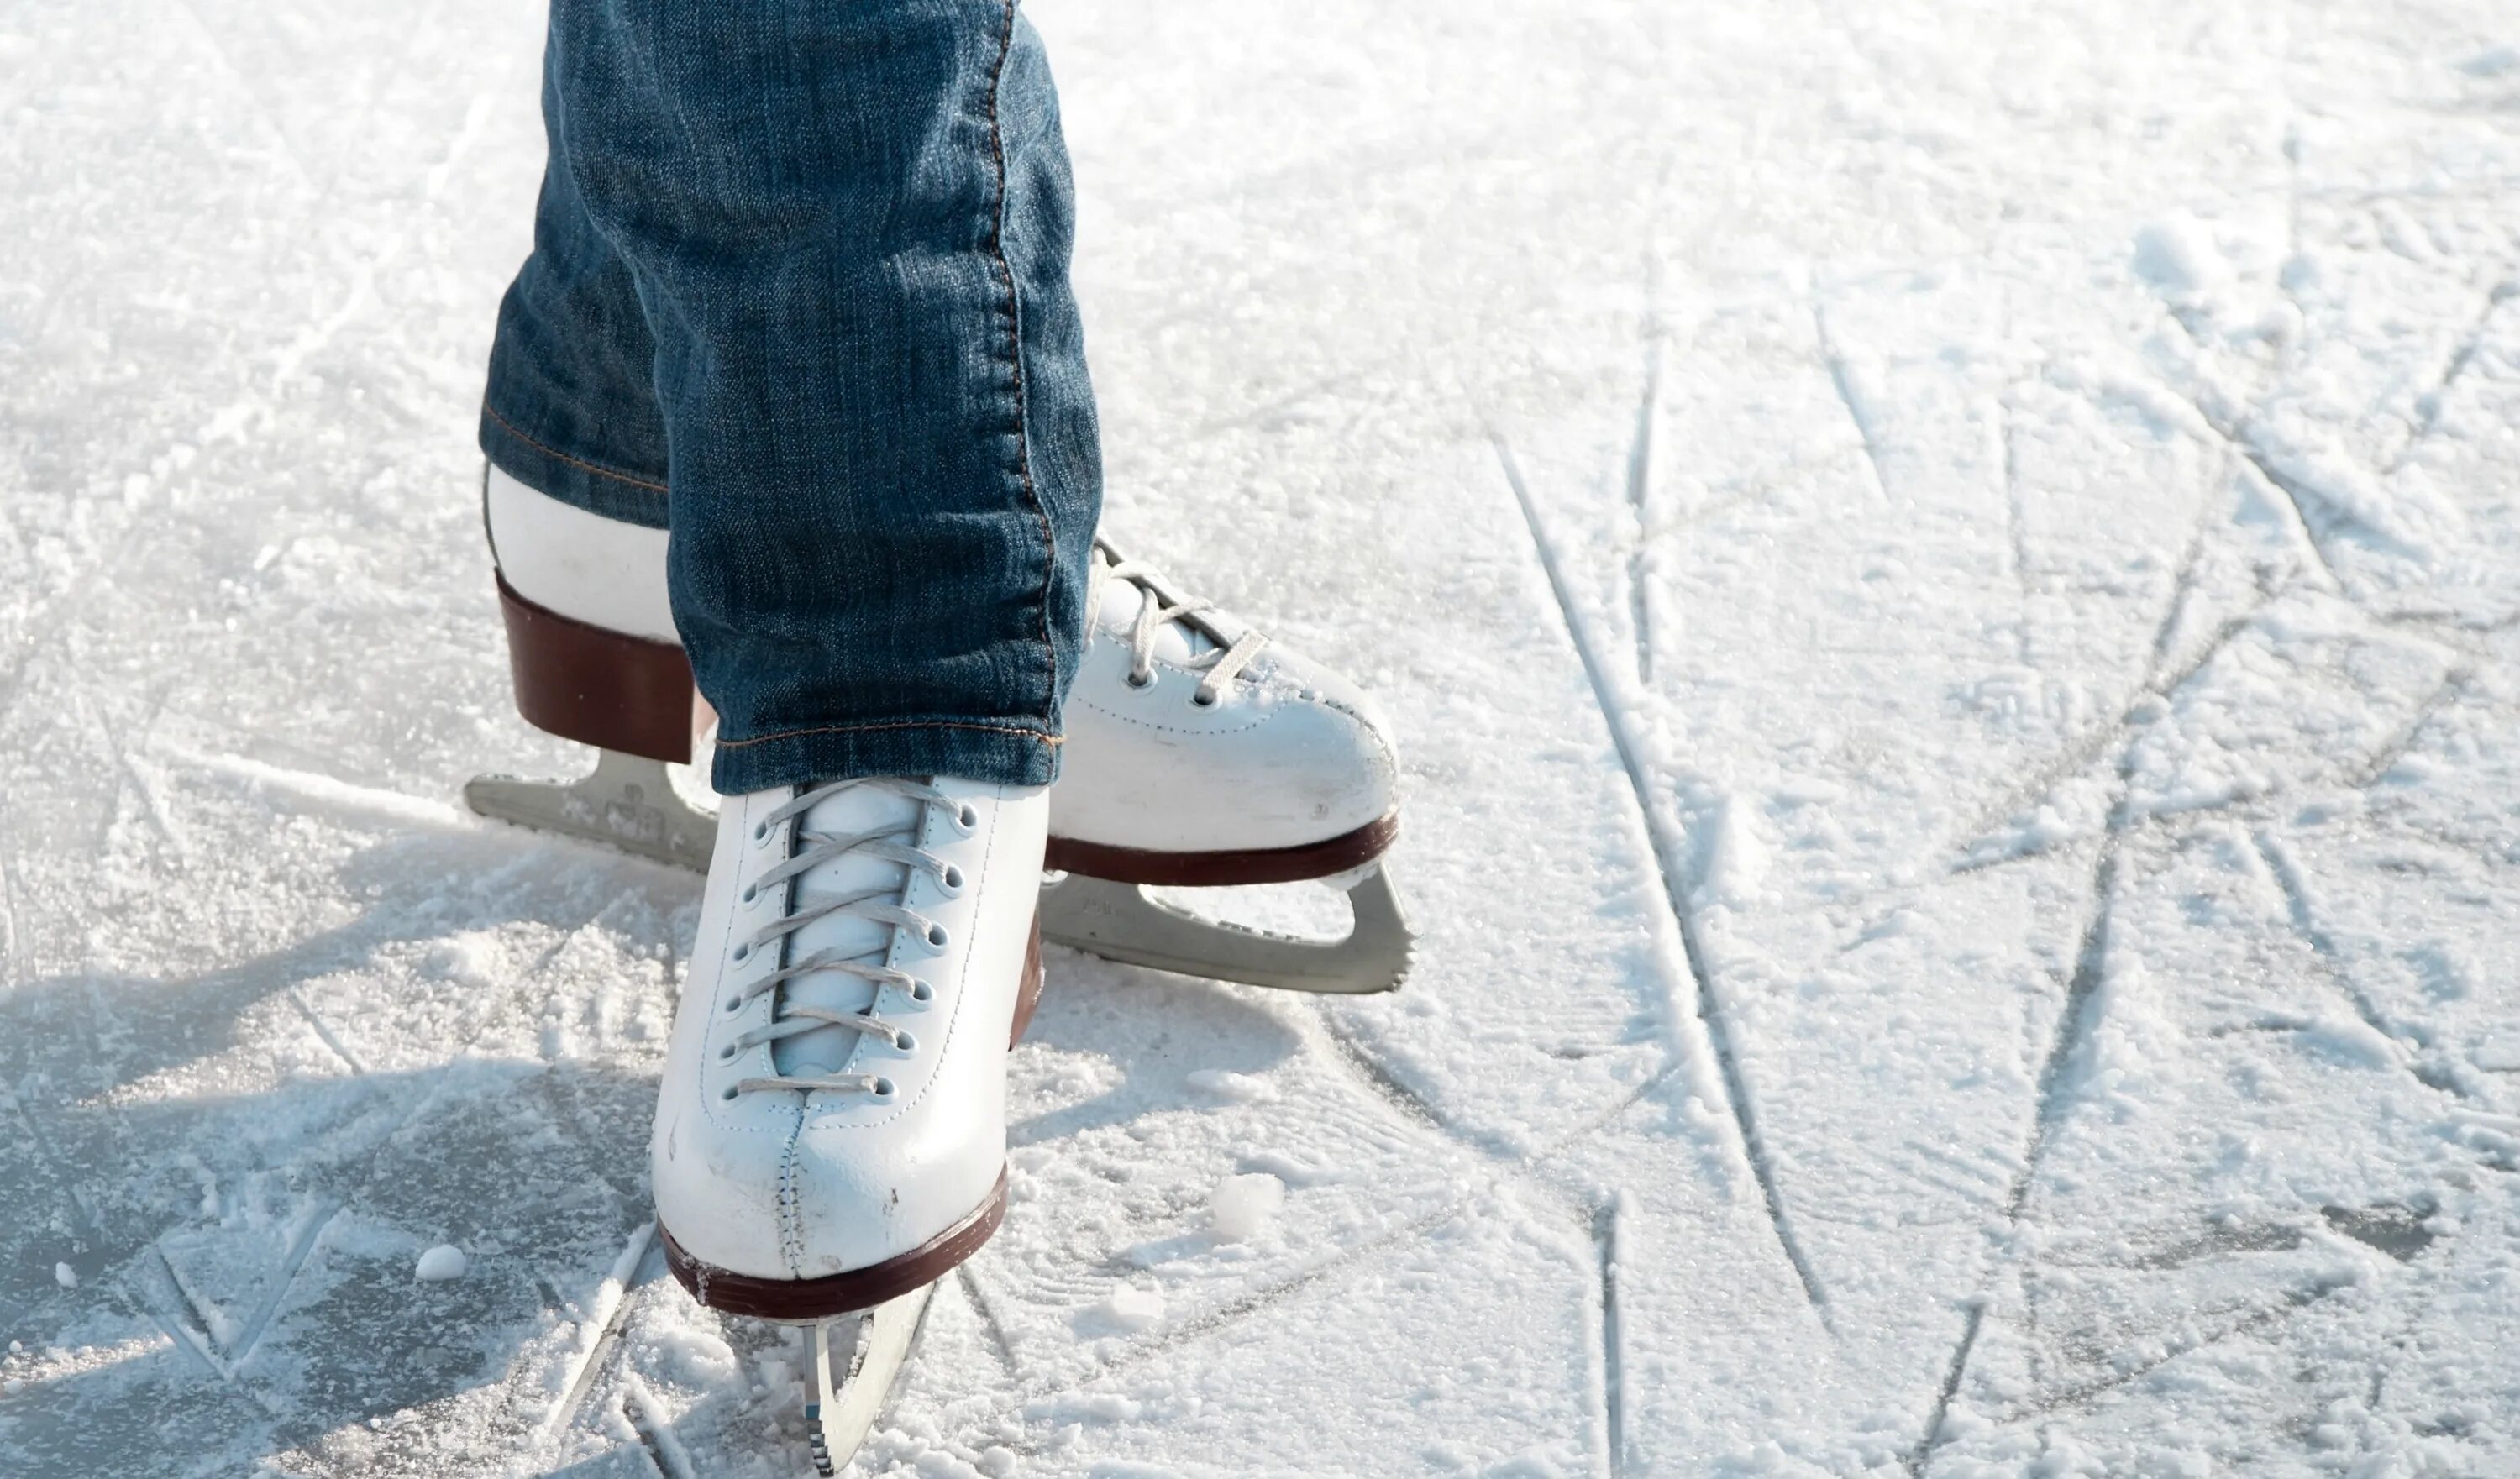 Лед коньки каток. Каток коньки. Ноги в коньках. Коньки фигурные на льду. Ноги в коньках на льду.